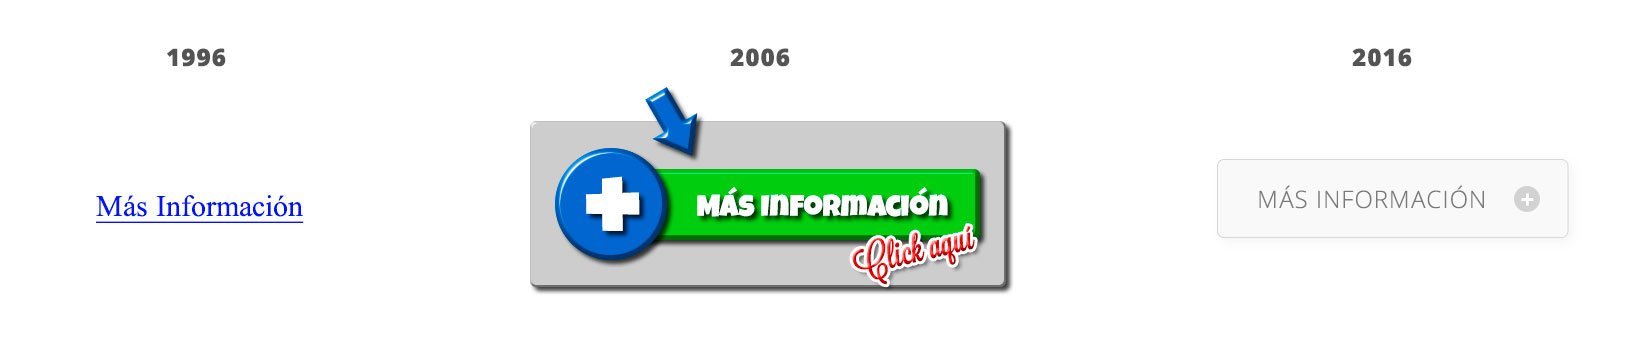 Evolución del diseño web en El Salvador